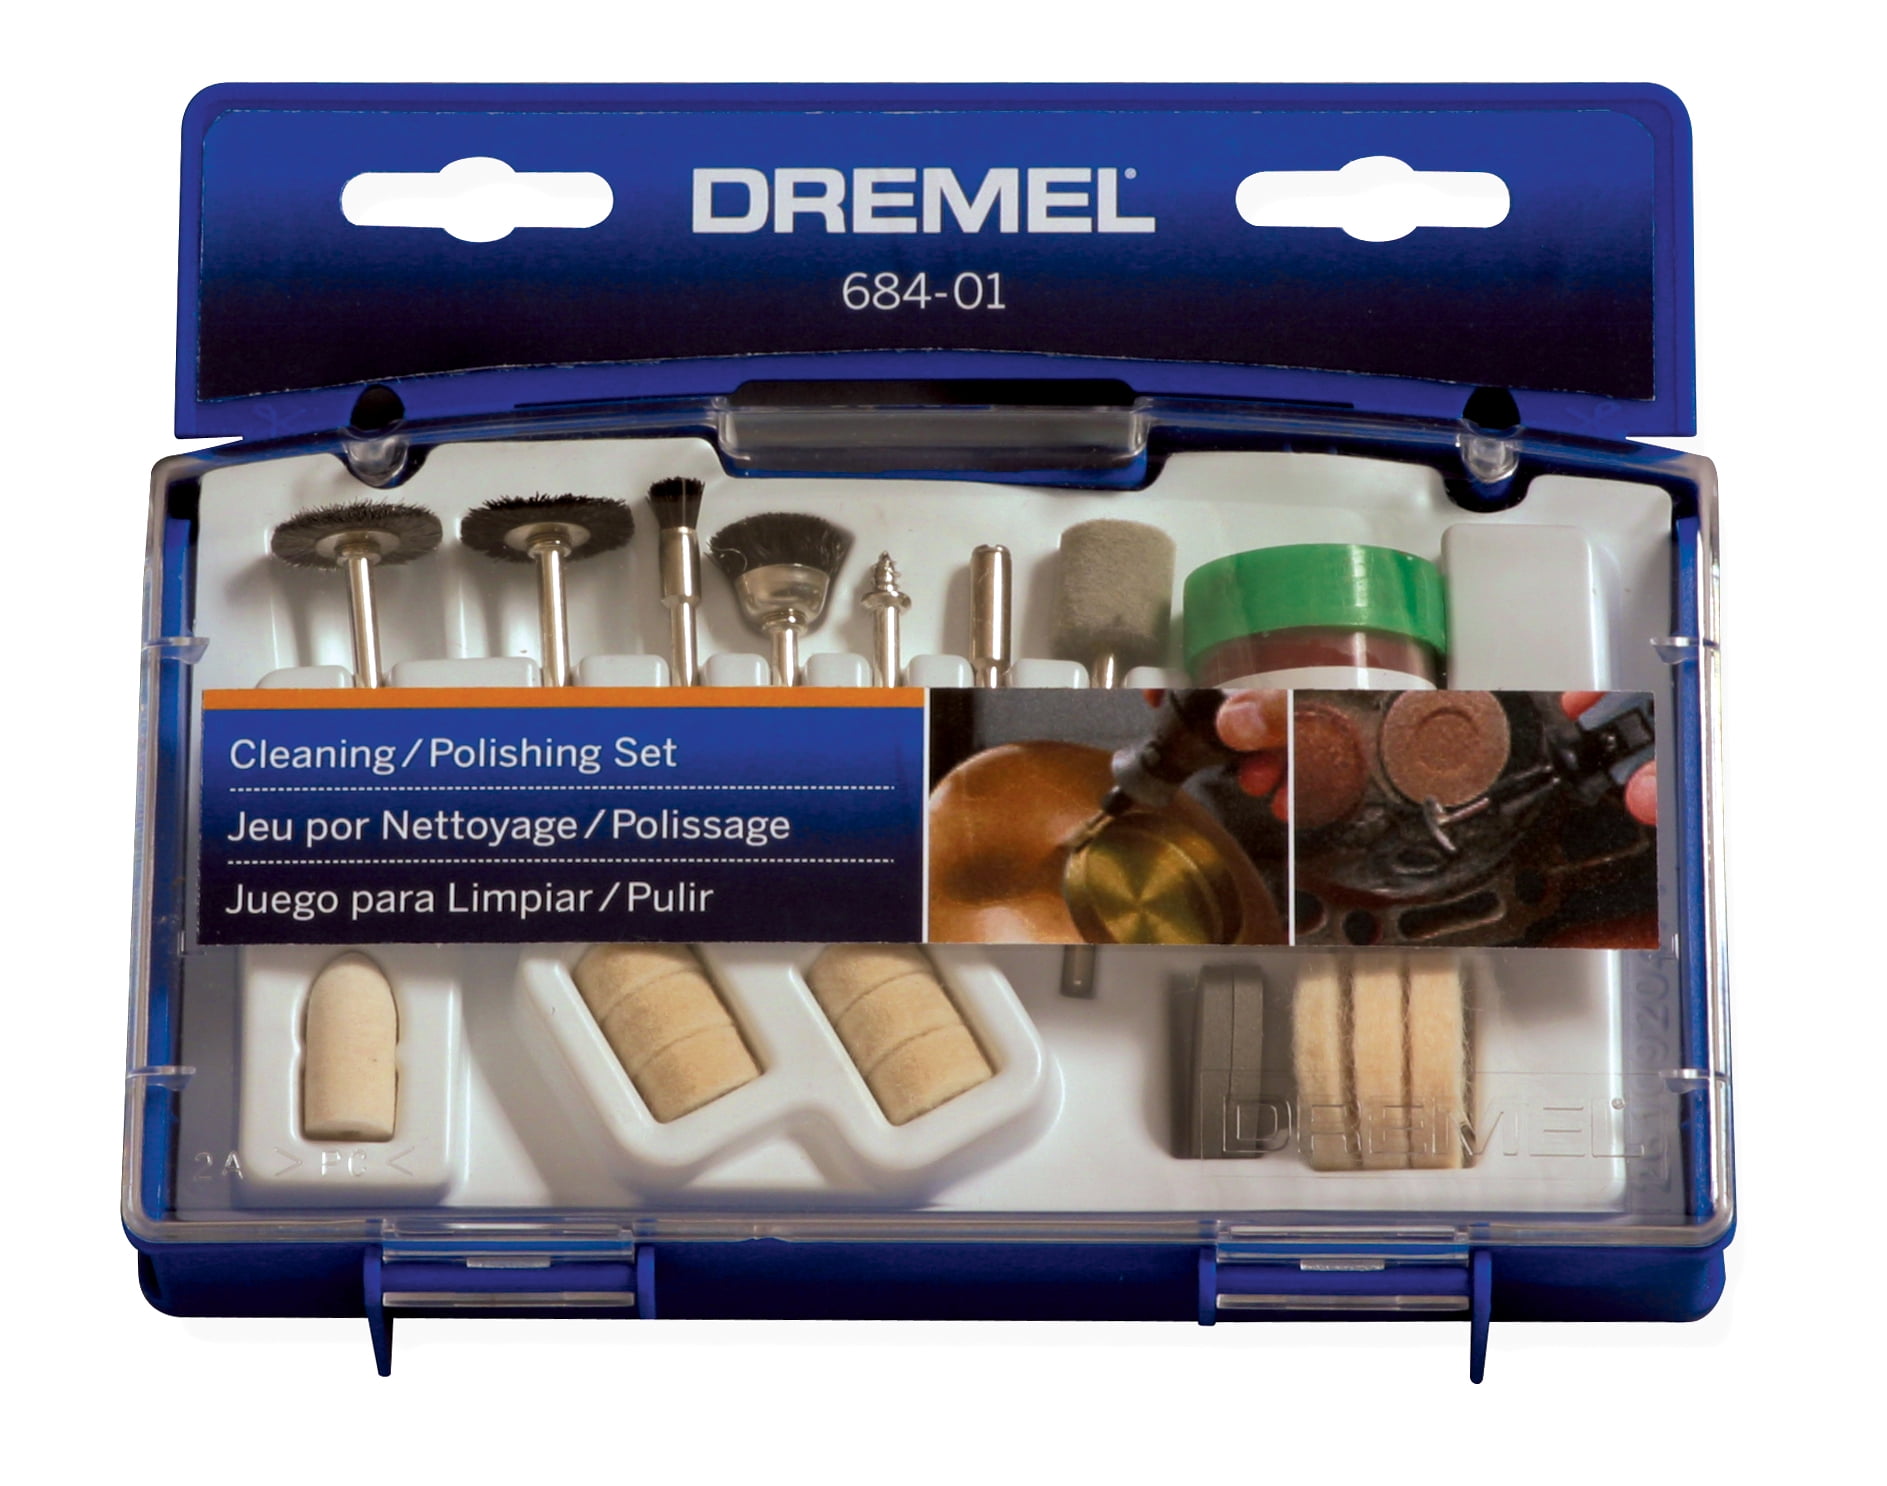 Coffret 20 accessoires DREMEL 684 (Coffret de nettoyage et